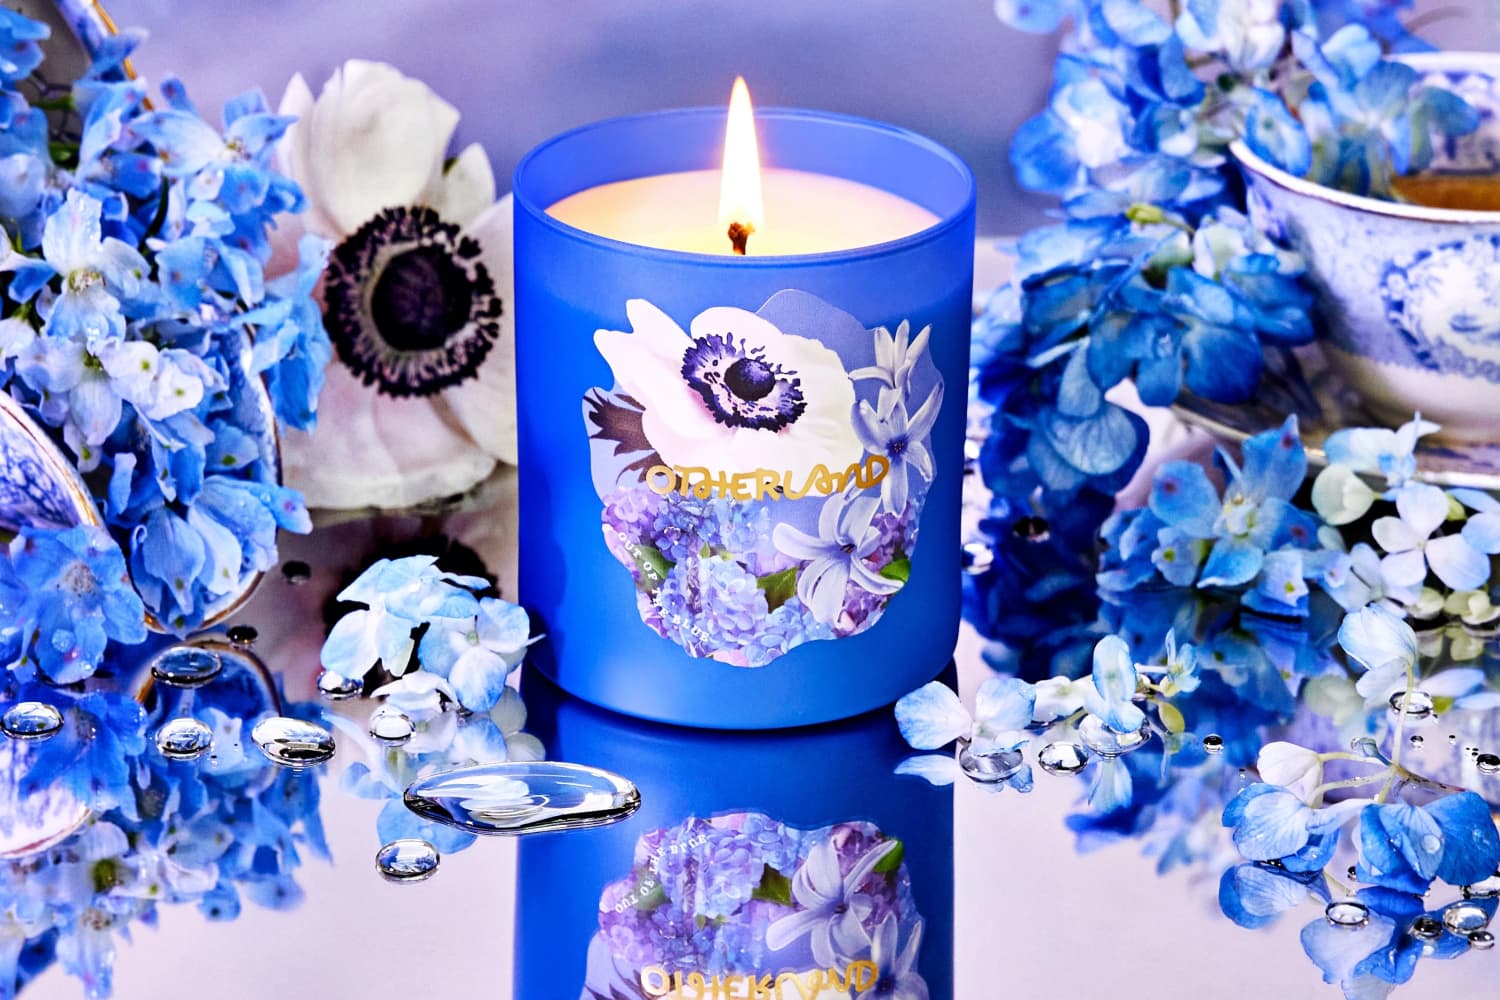 Hazel & Blue - Garden Lovers Candle Making Kit – Floral Fêtes